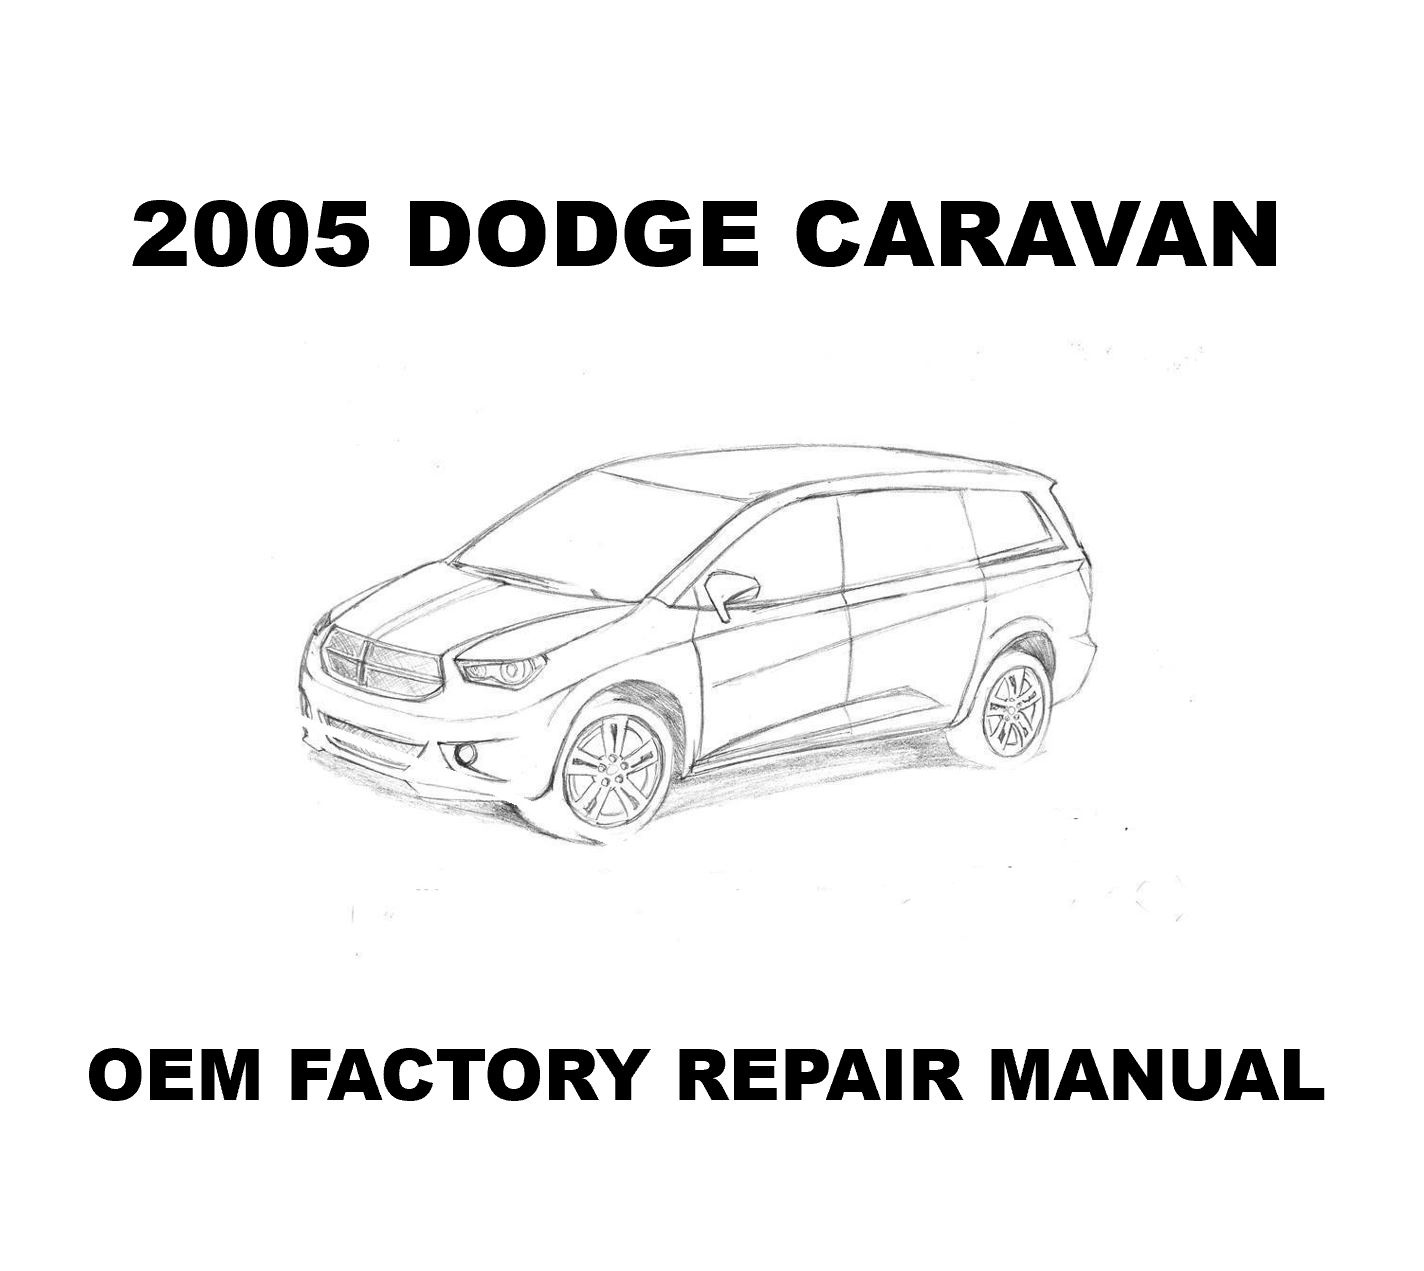 2005_dodge_caravan_reoair_manual_1424